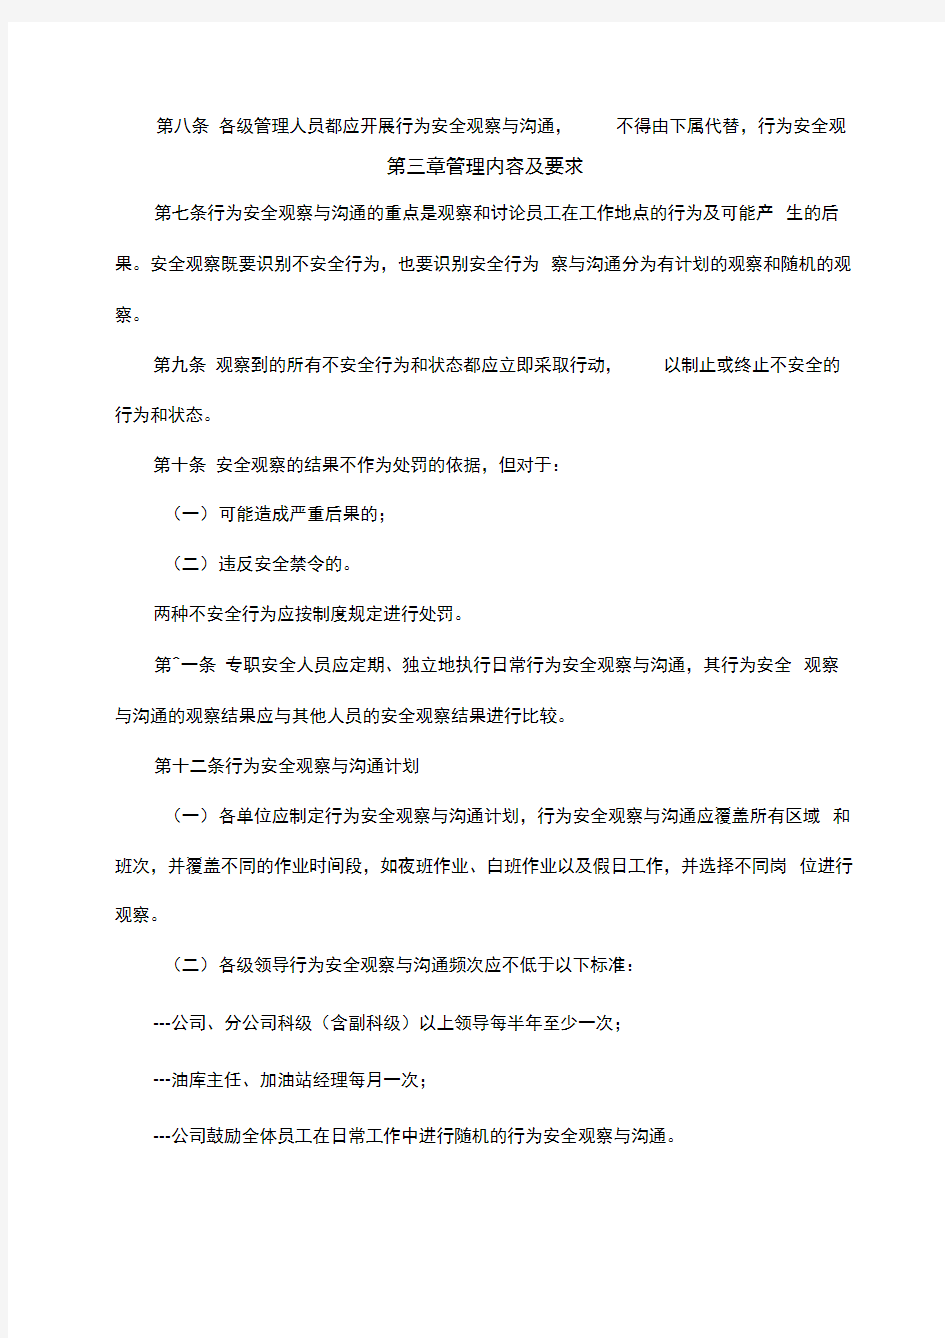 中国石油北京销售公司行为安全观察与沟通管理规定